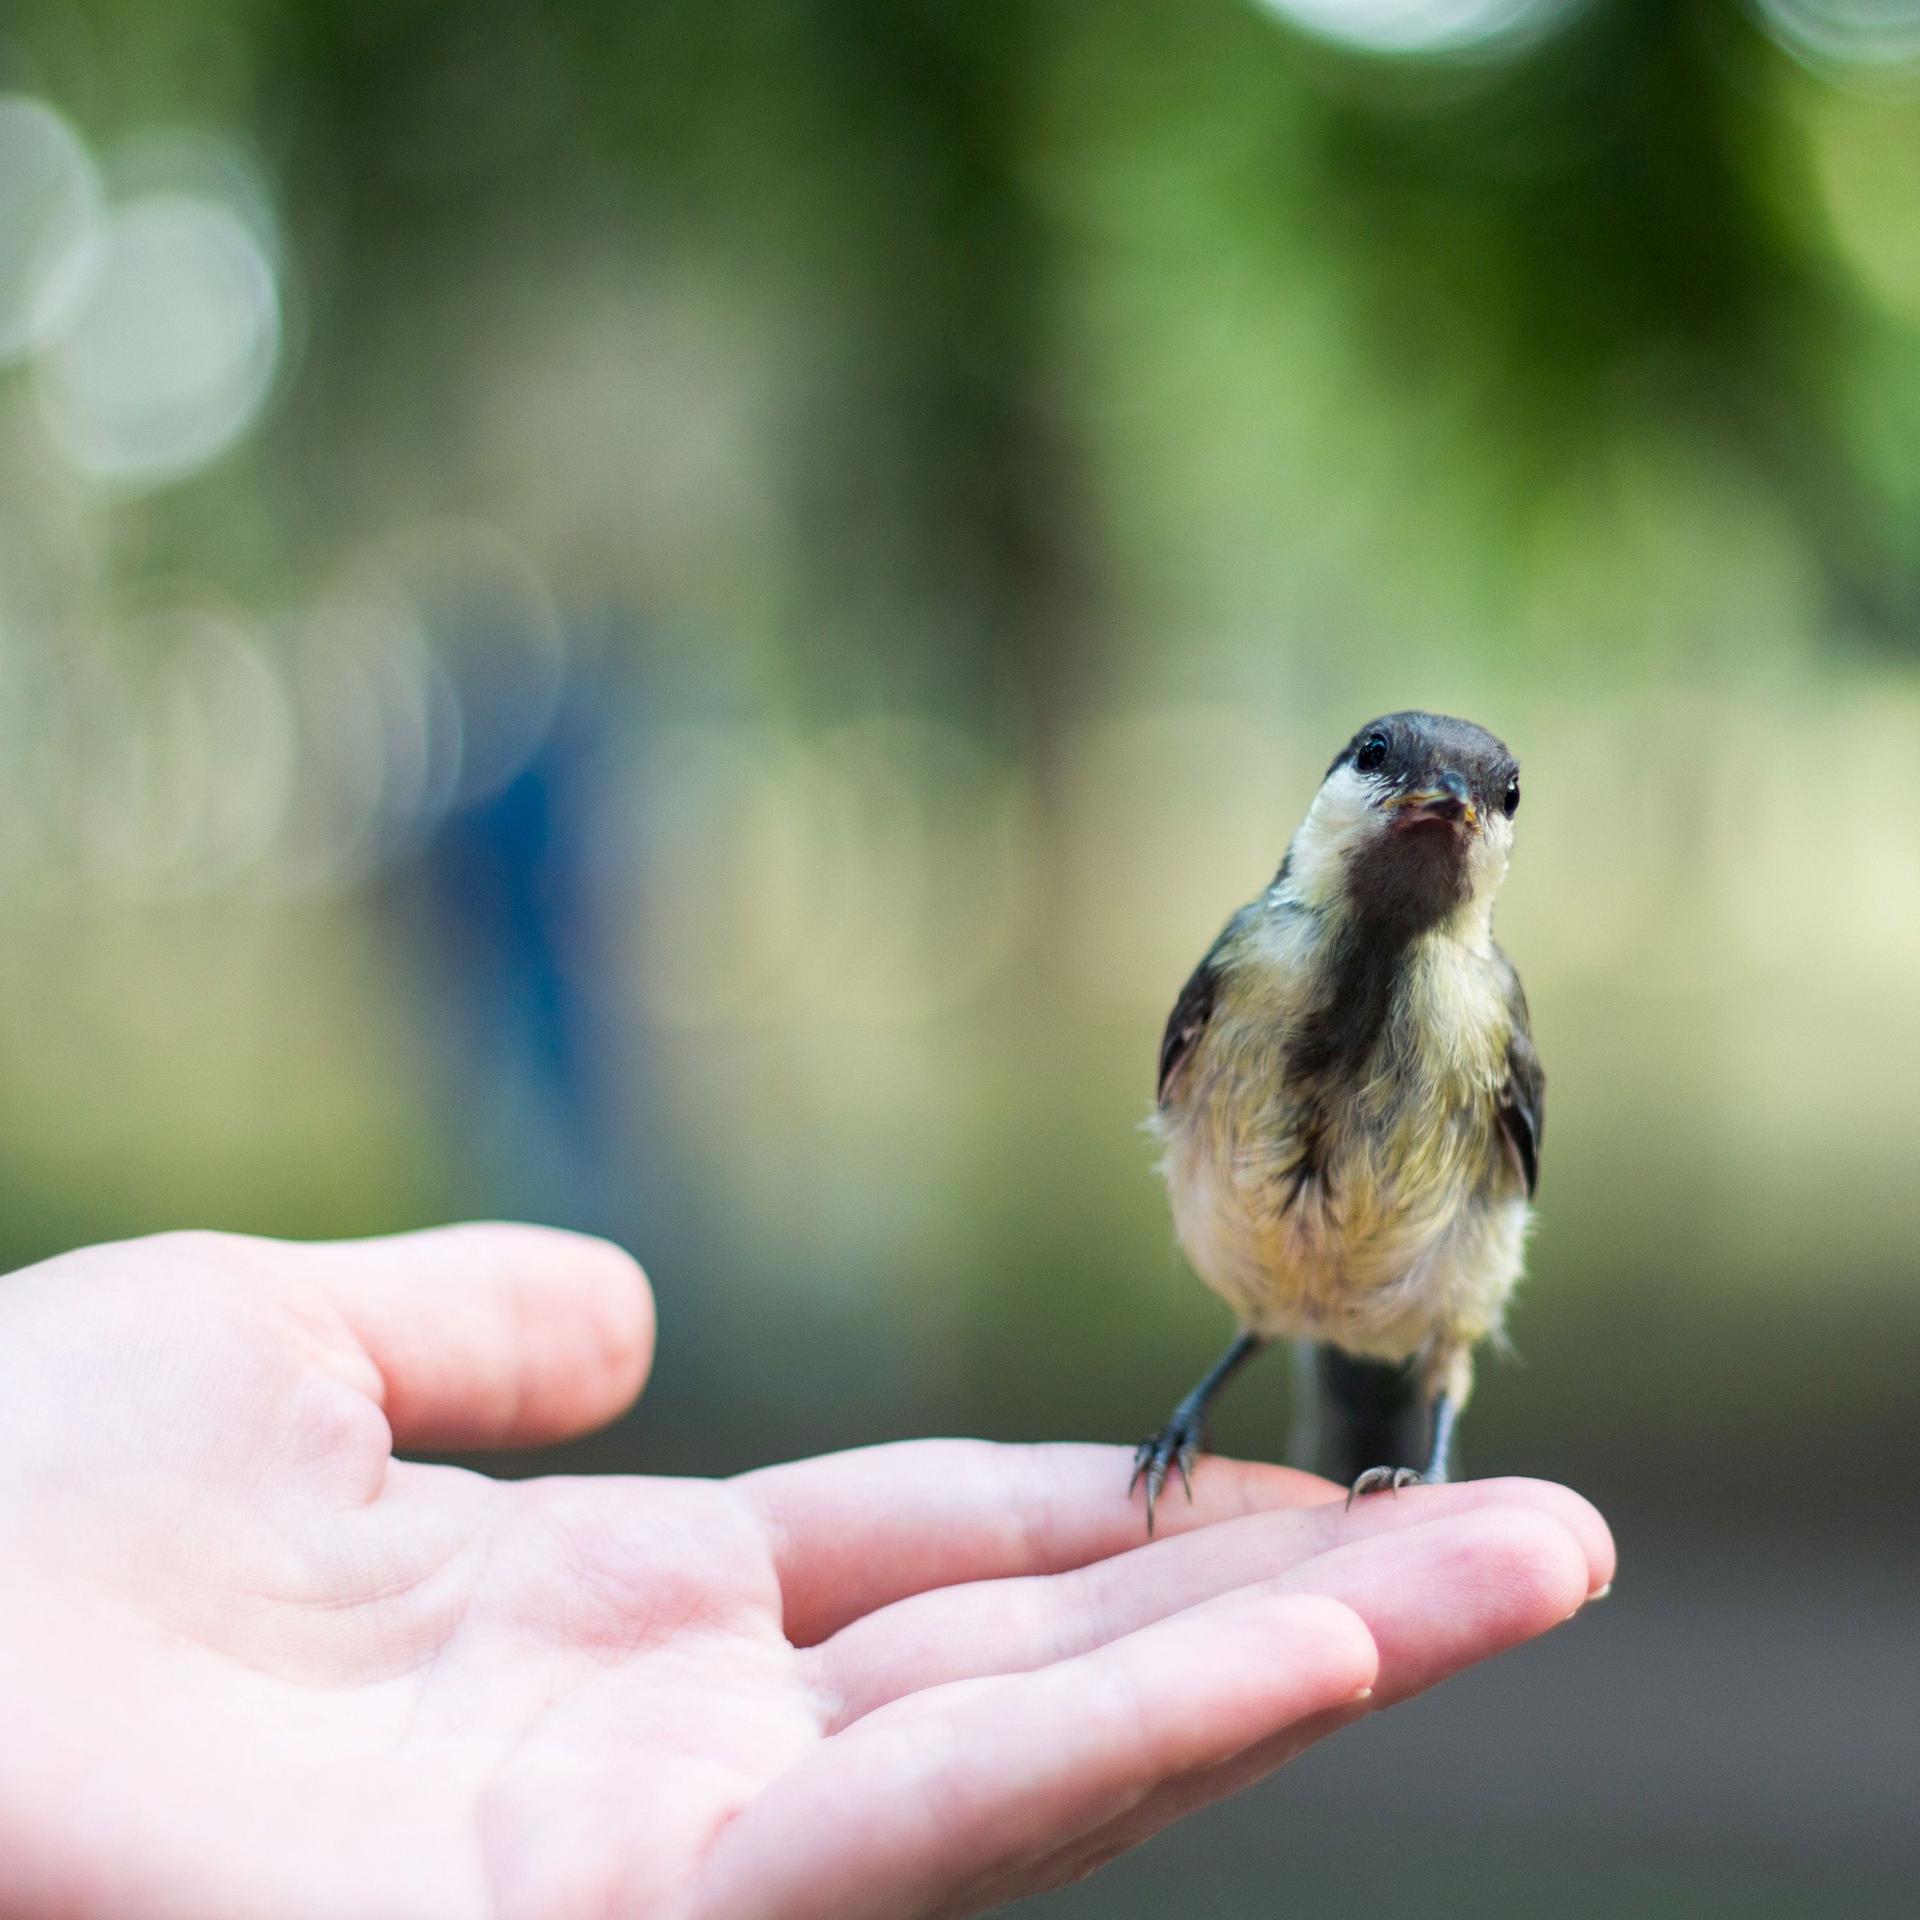 Ein kleiner Vogel auf einer Hand. Er schaut Richtung Kamera. Der Hintergrund ist unscharf.